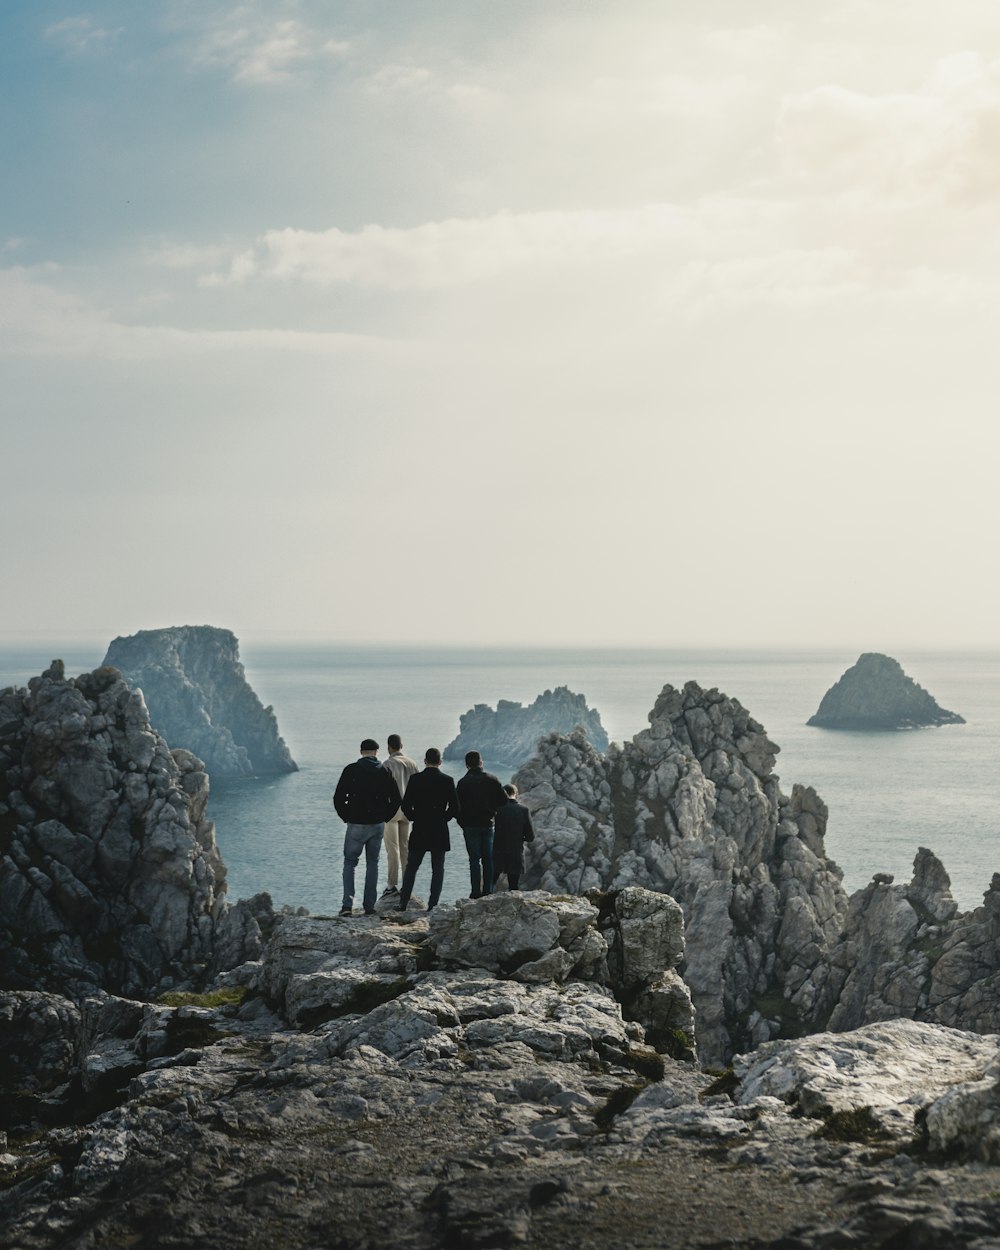 cinq personnes debout sur une colline rocheuse regardant la mer calme